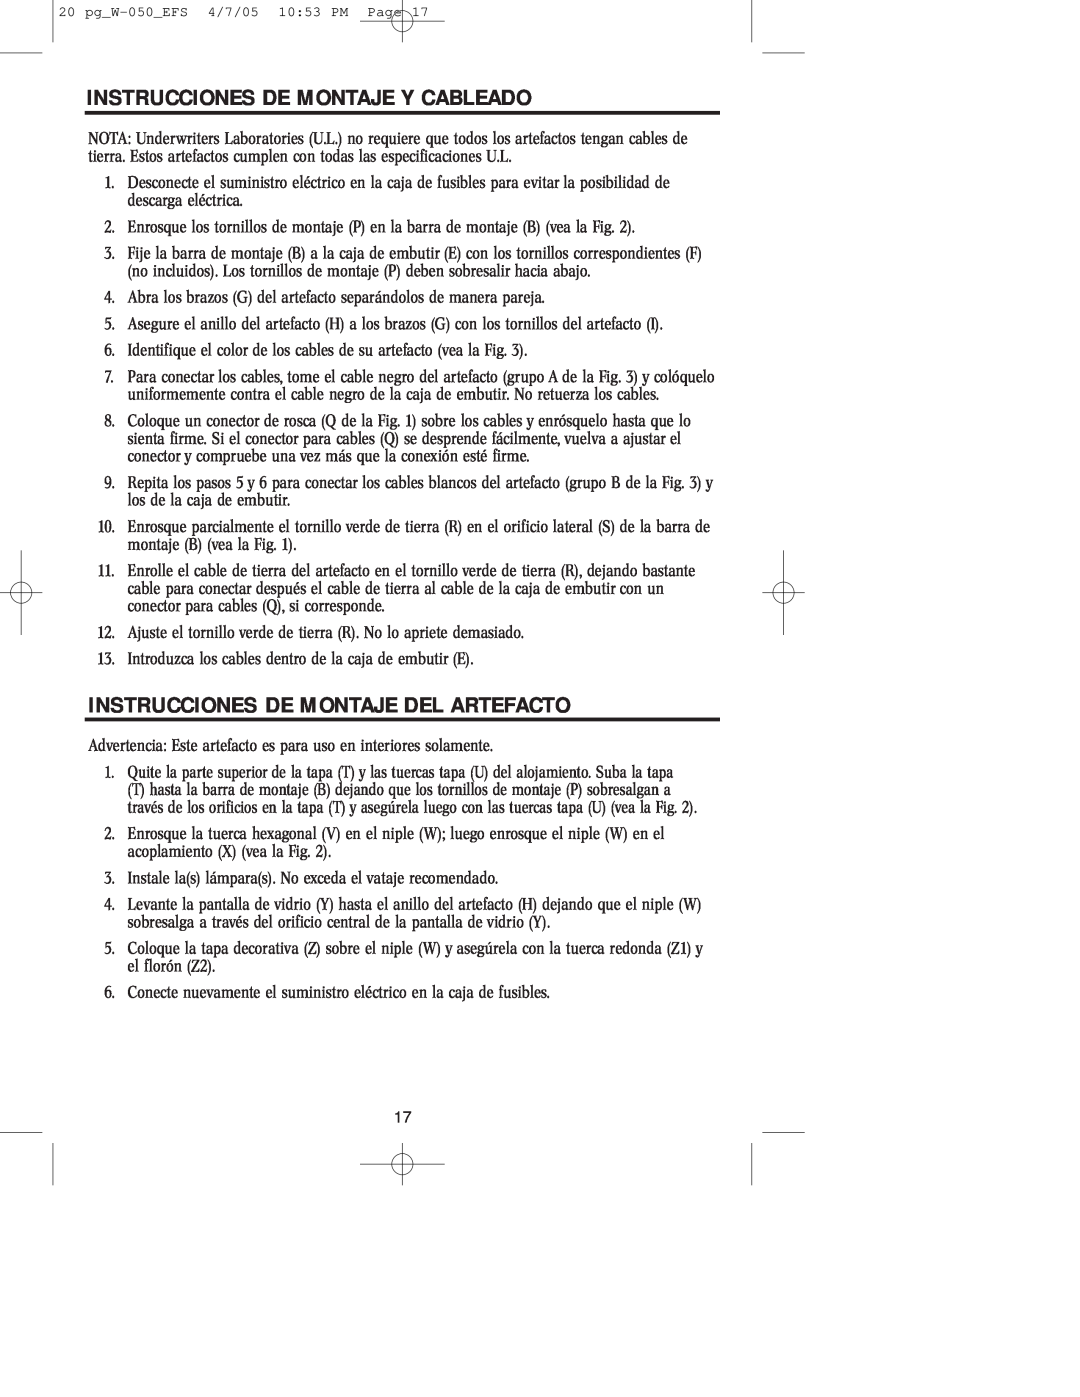 Westinghouse W-050 owner manual Instrucciones De Montaje Y Cableado, Instrucciones De Montaje Del Artefacto 